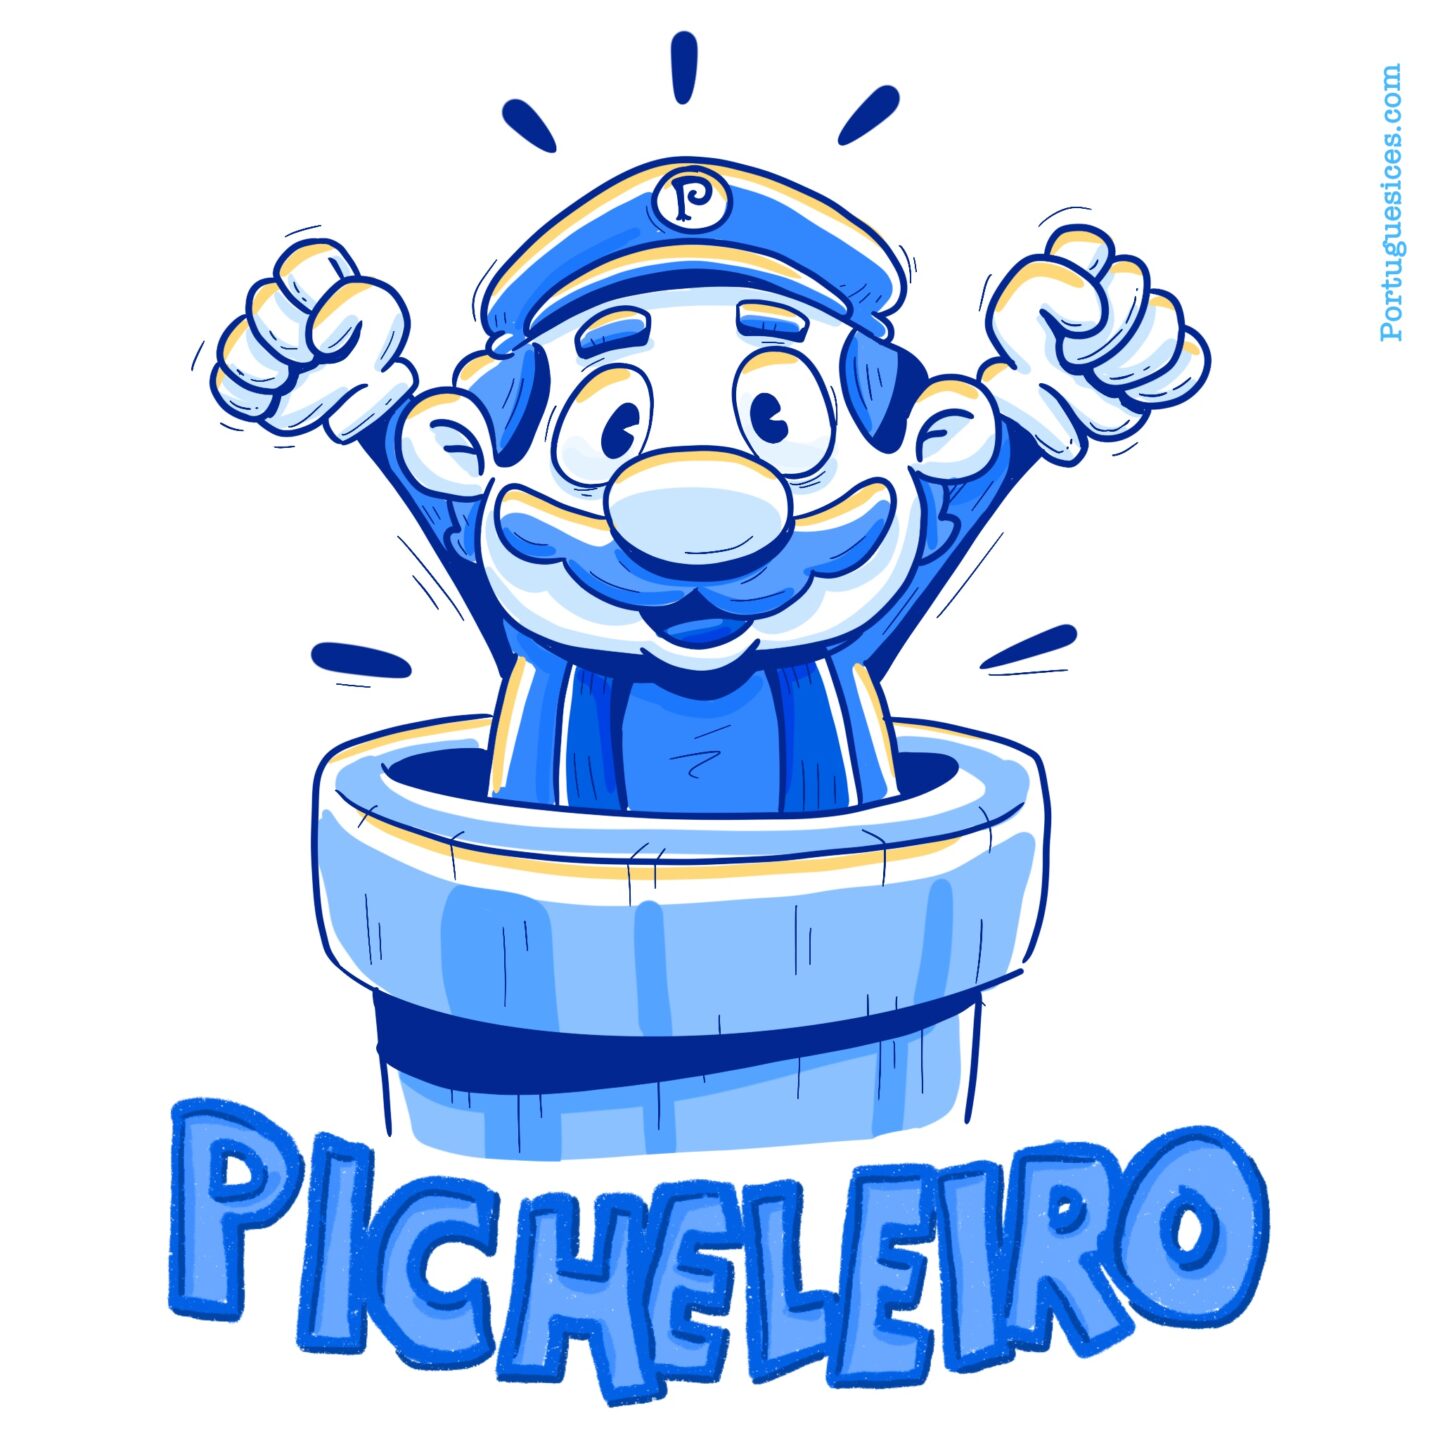 Super Mário Picheleiro